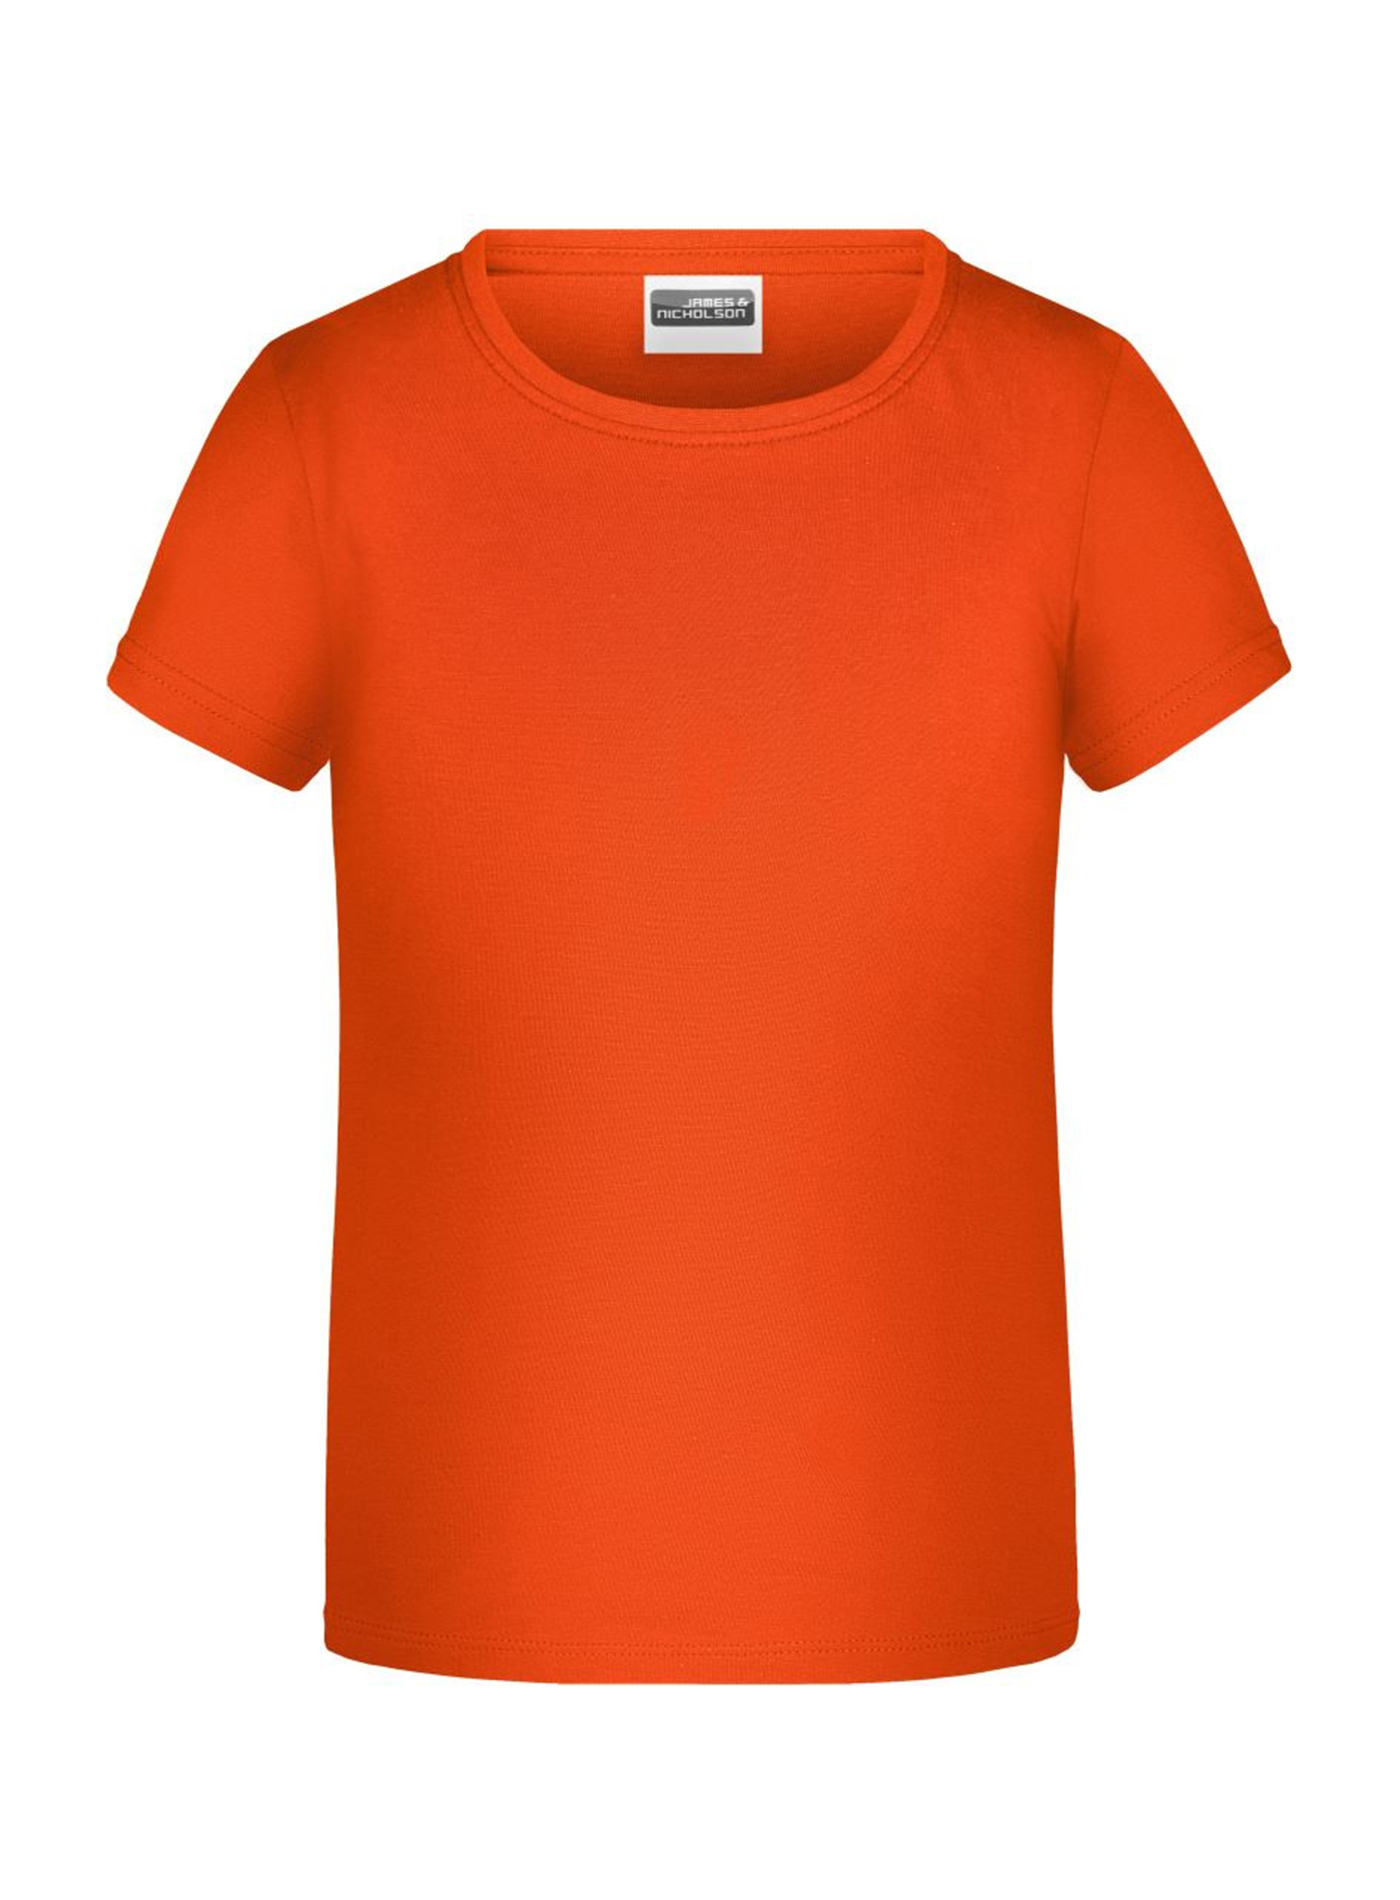 Dívčí tričko James & Nicholson - Neonová oranžová M